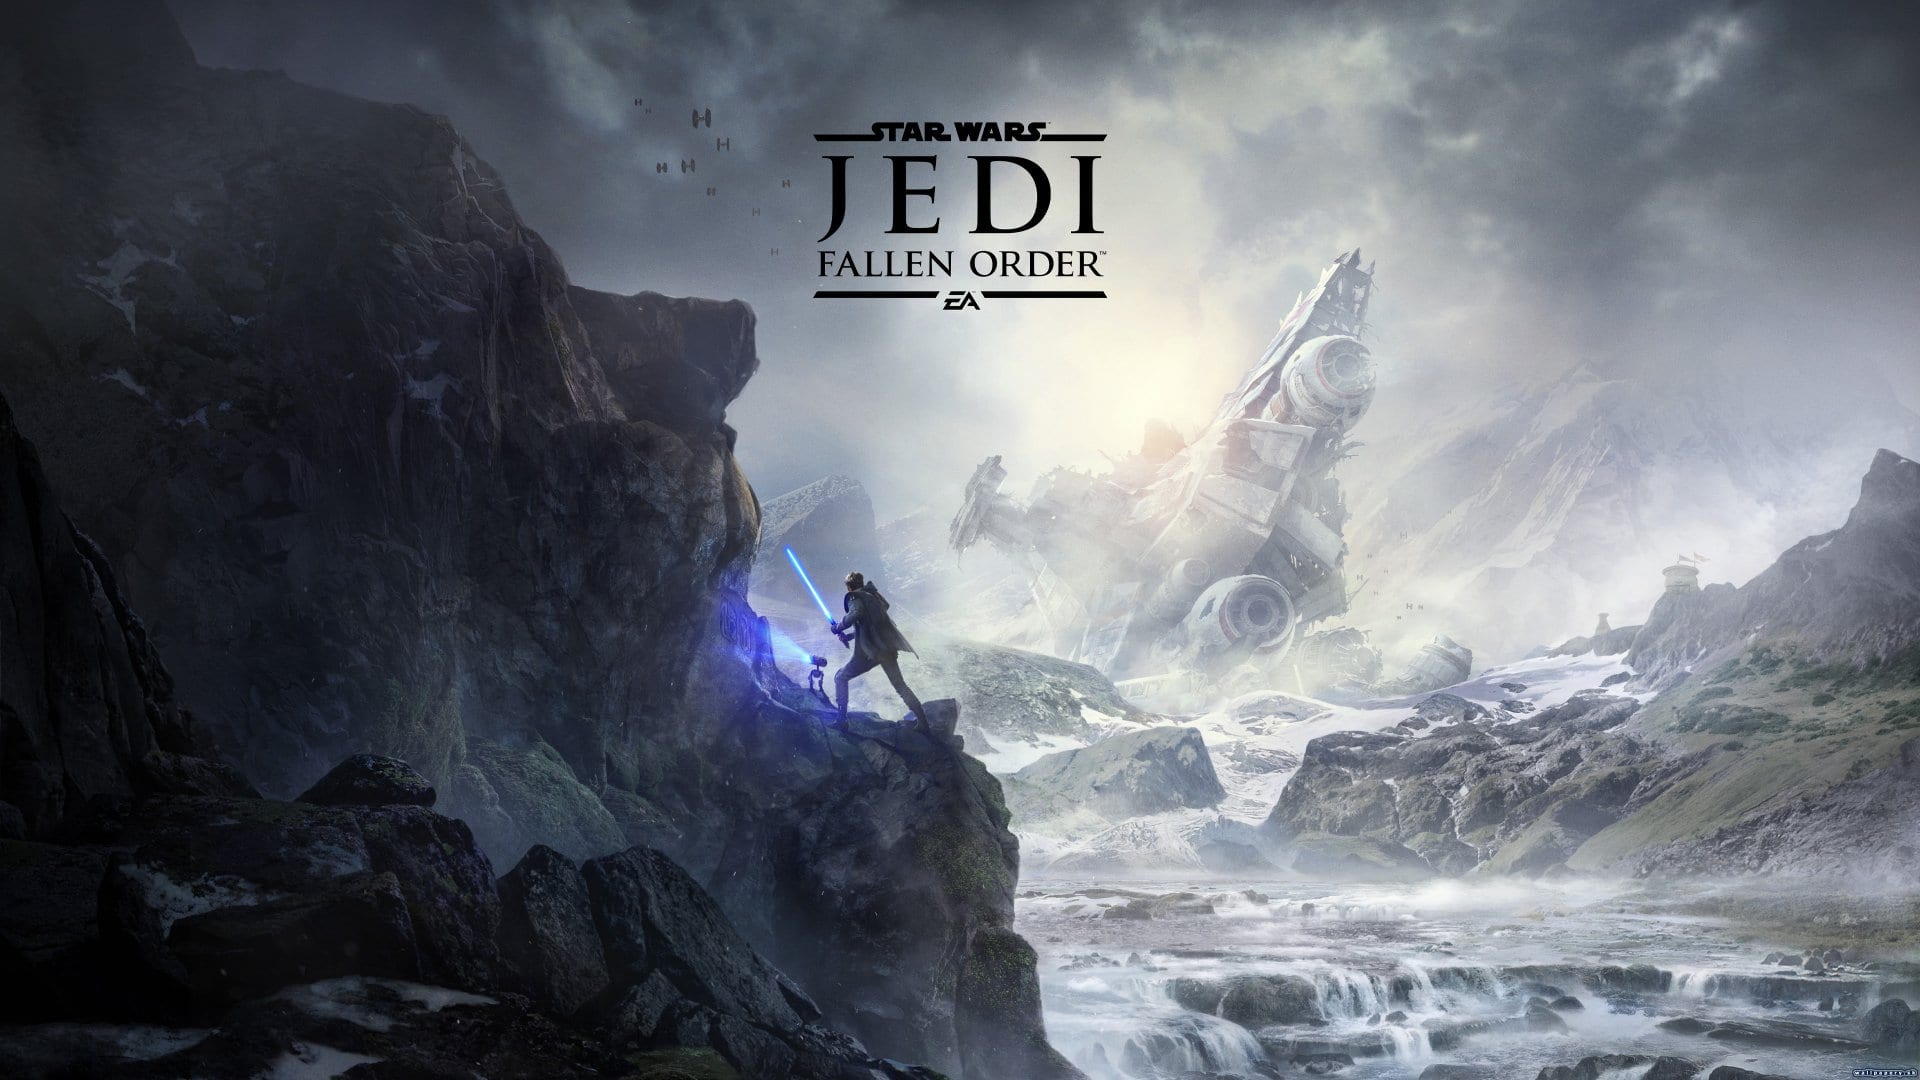 4K & HD Star Wars: Jedi Fallen Order Wallpaper You Need to